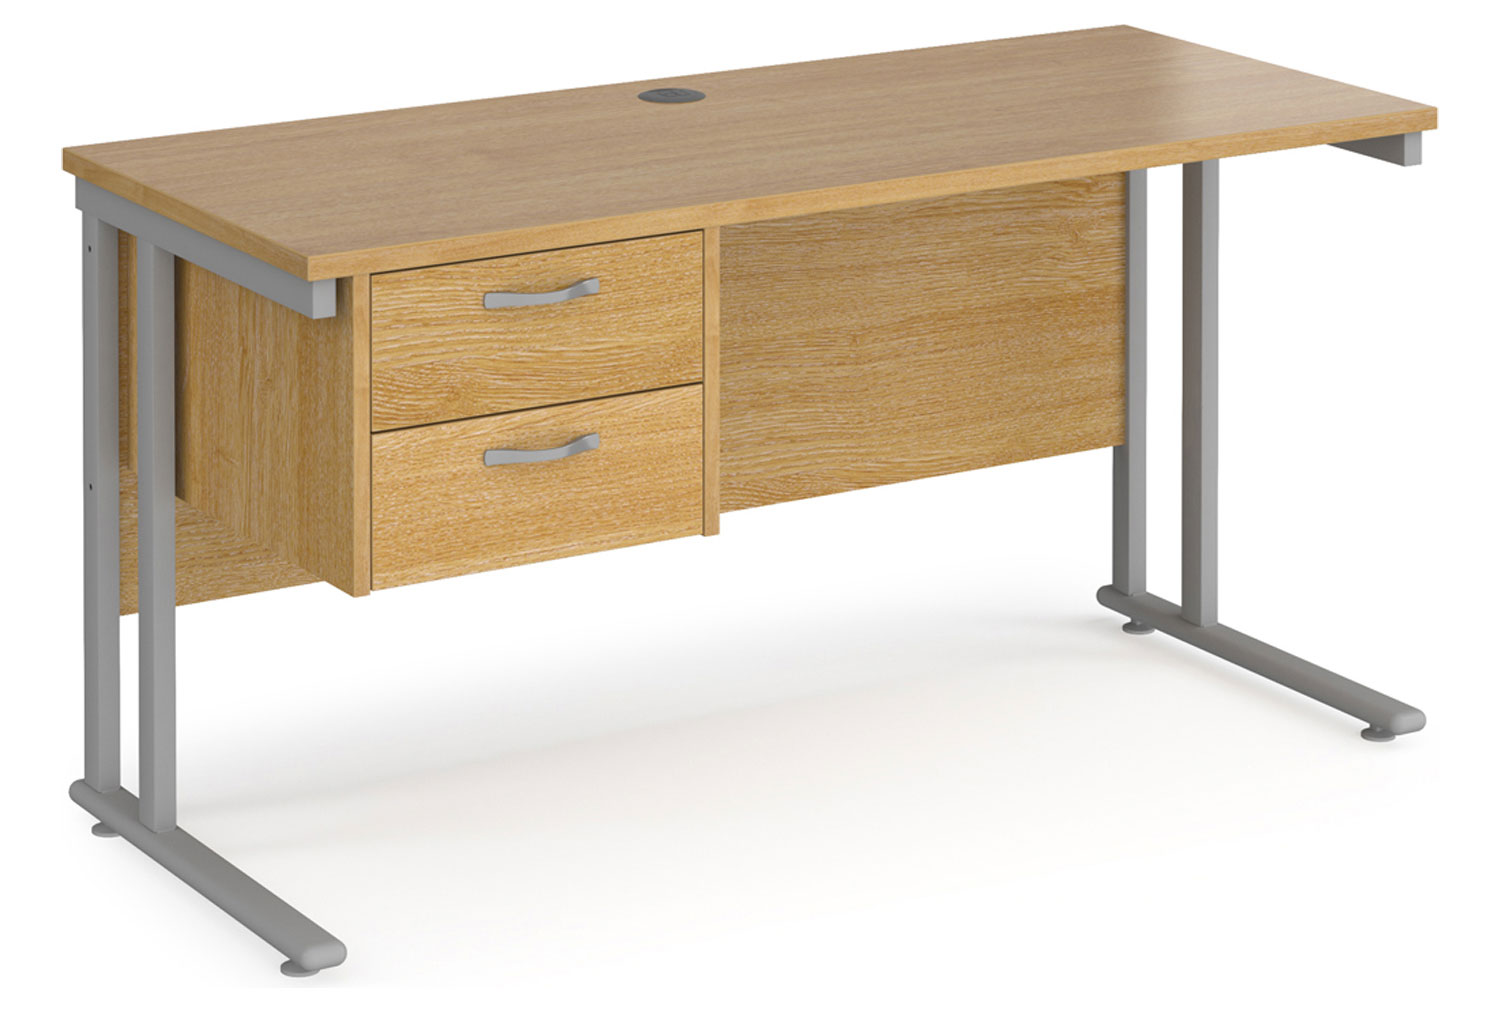 Value Line Deluxe C-Leg Narrow Rectangular Office Desk 2 Drawers (Silver Legs), 140wx60dx73h (cm), Oak, Fully Installed